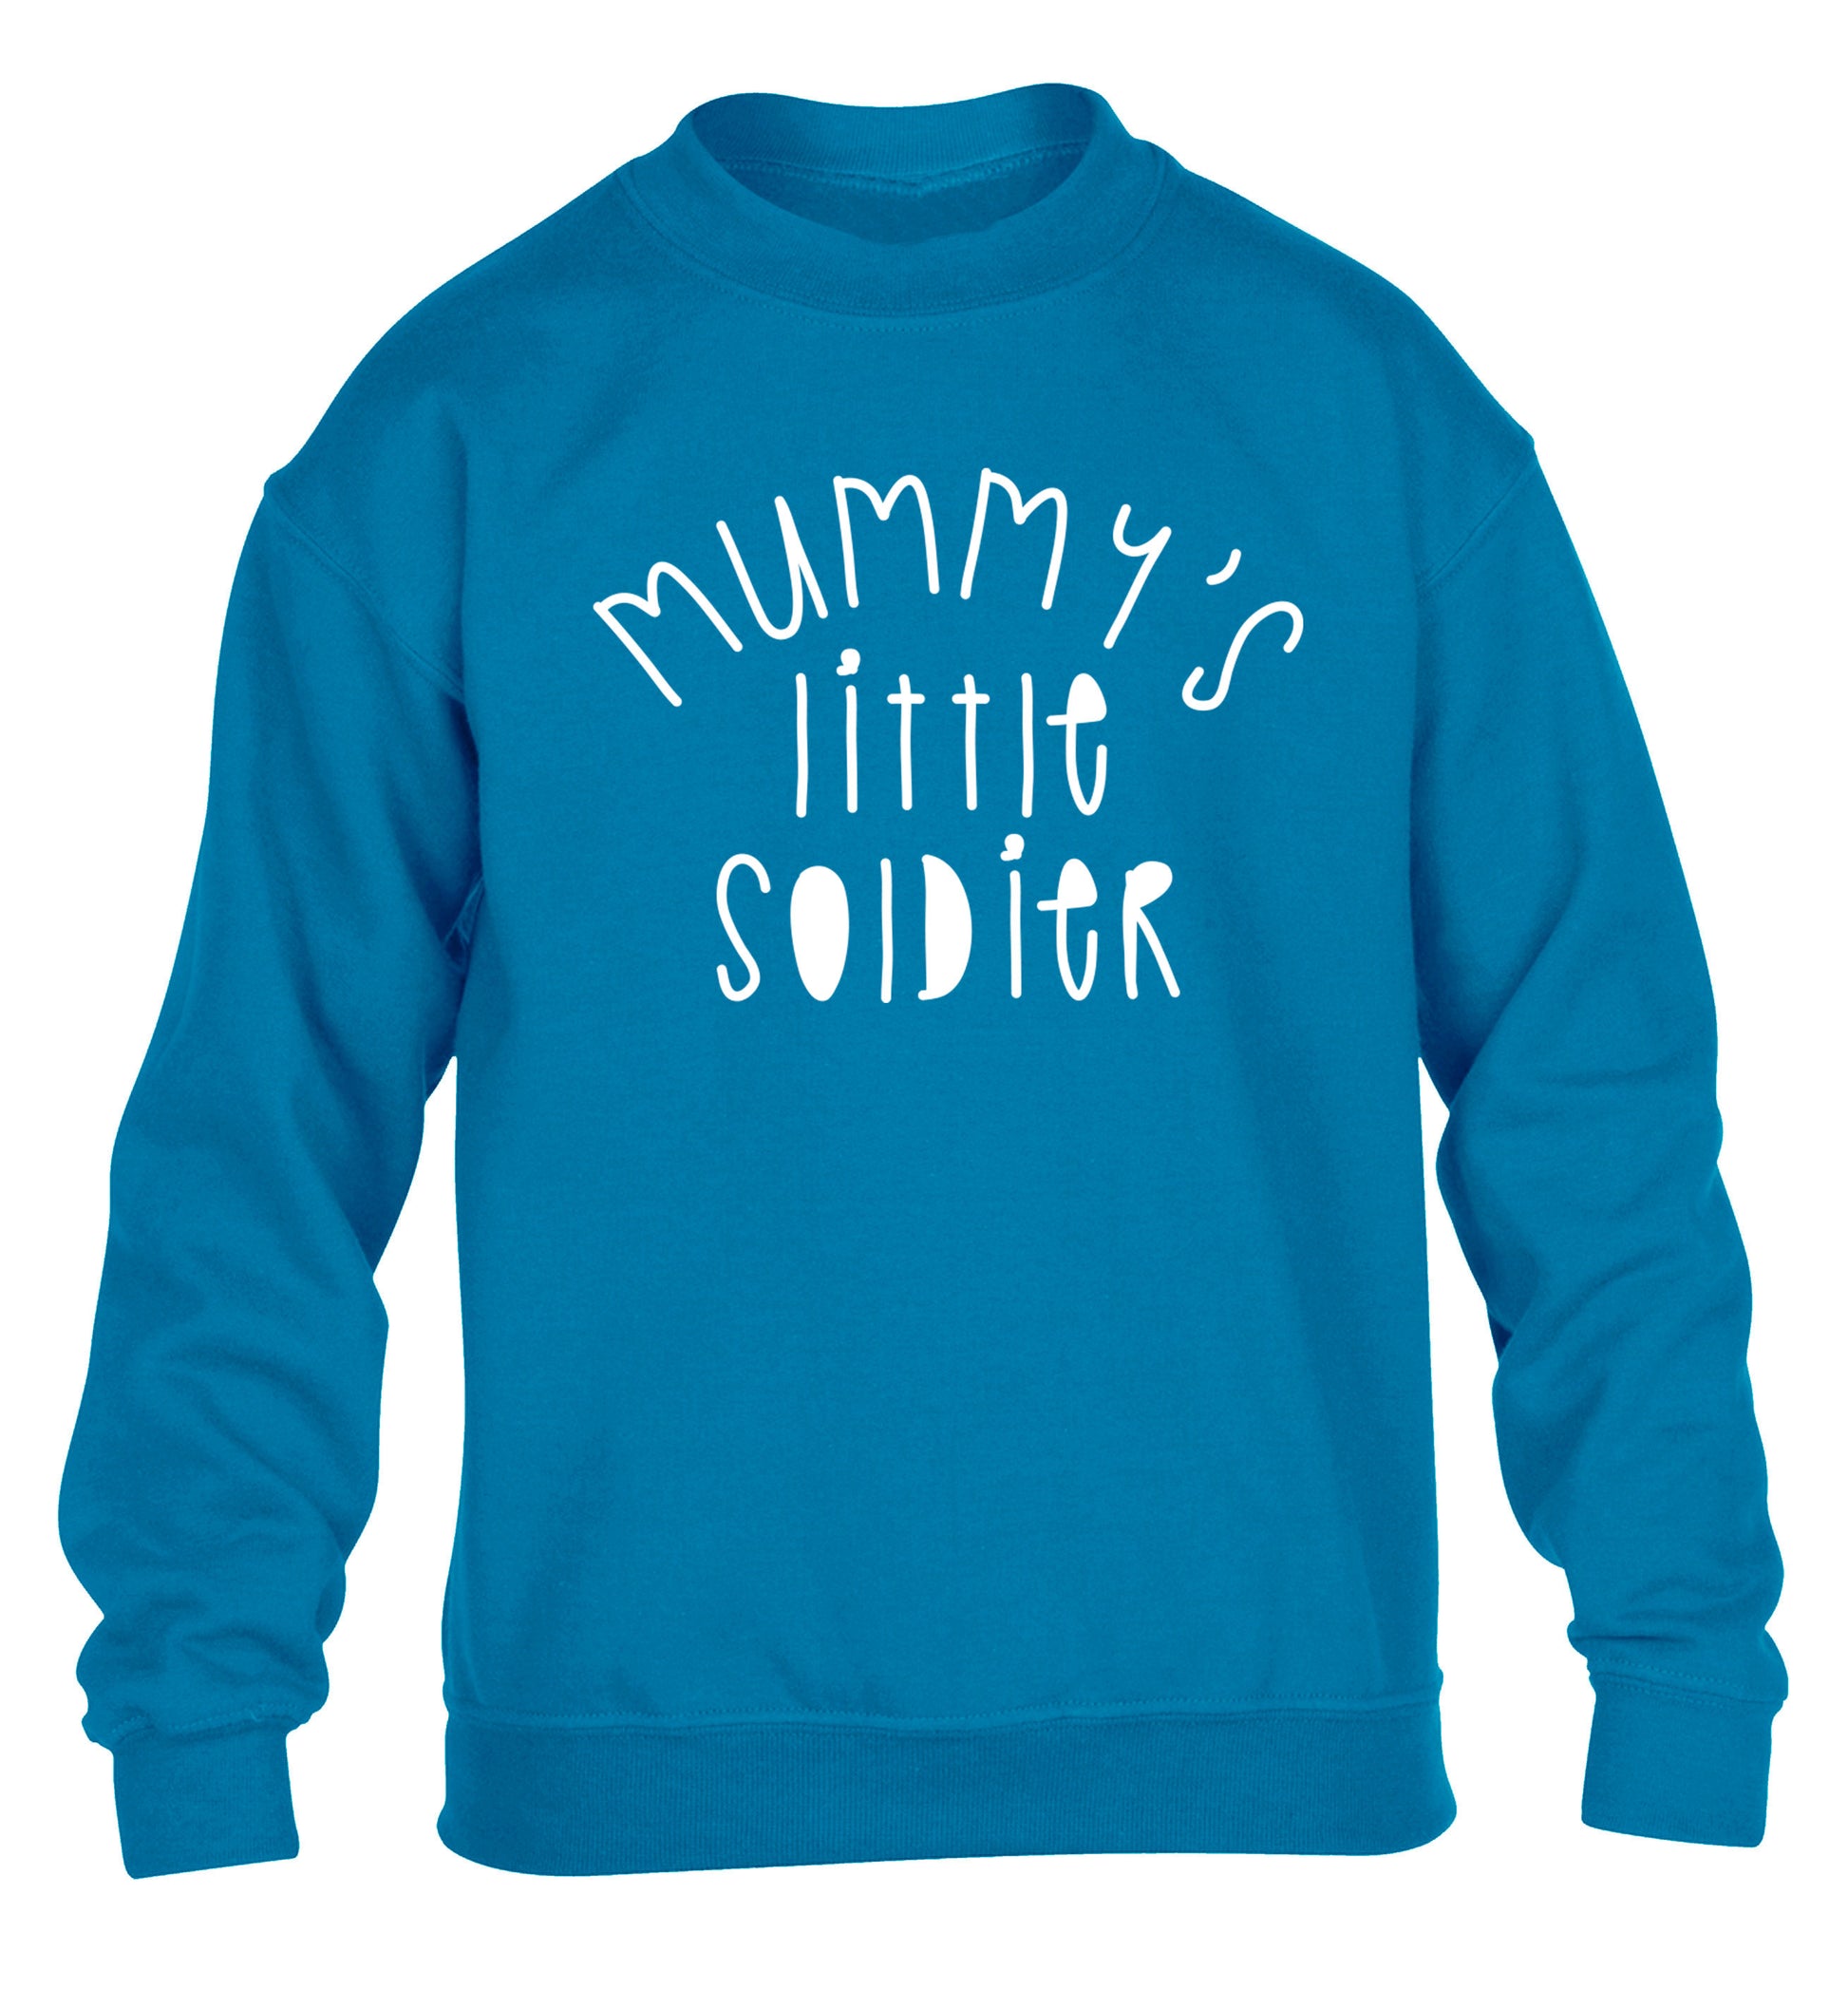 Mummy's little soldier children's blue sweater 12-14 Years